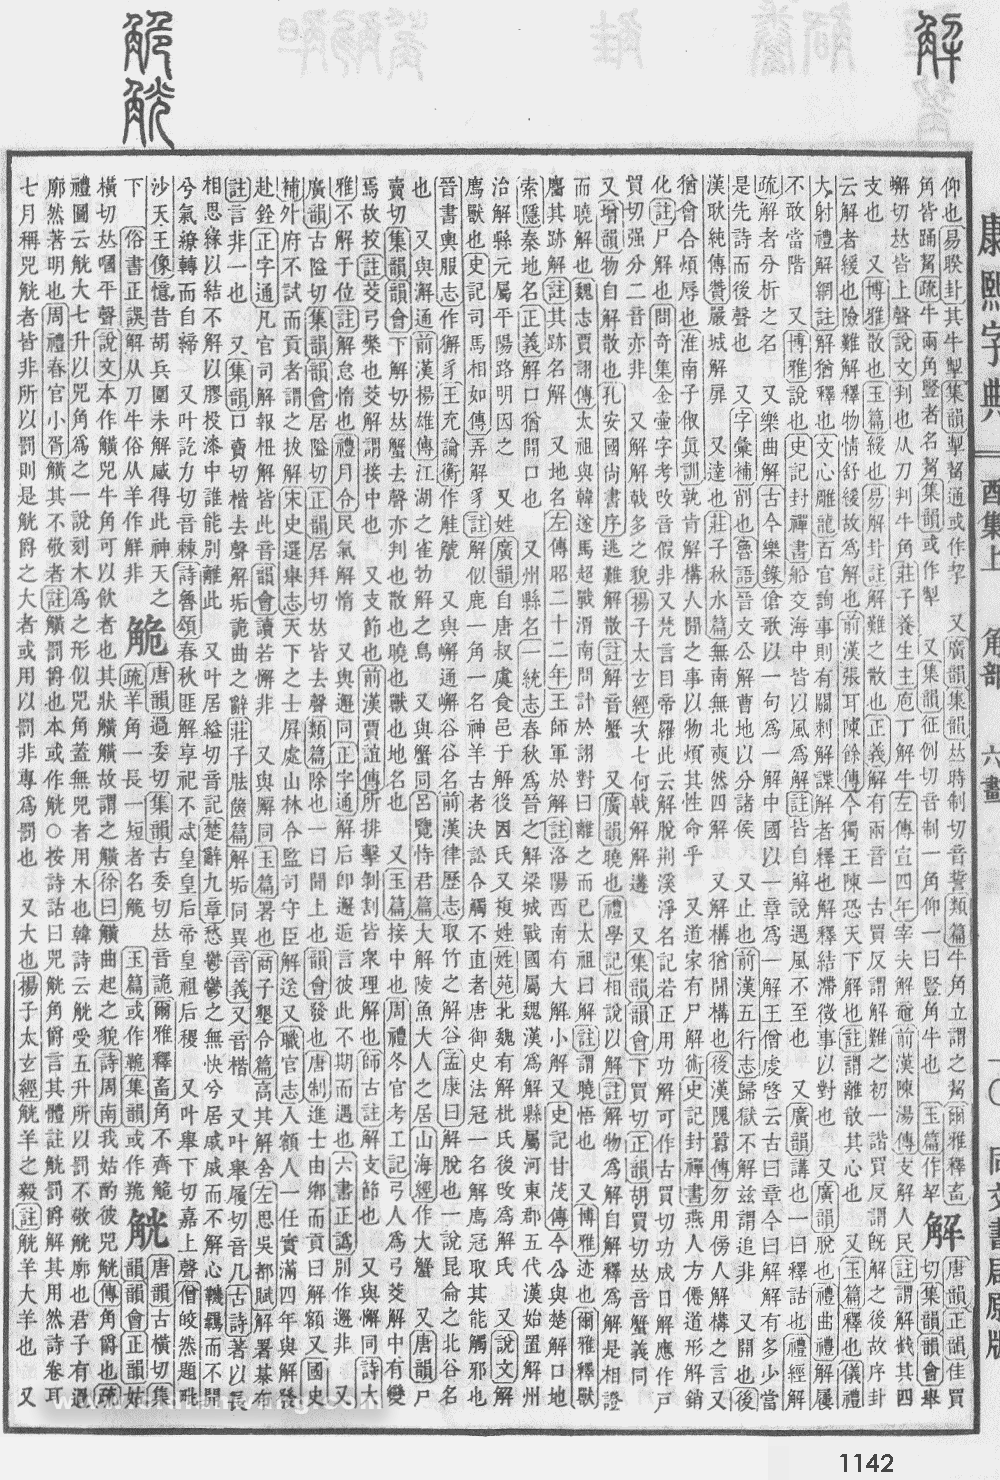 康熙字典掃描版第1142頁